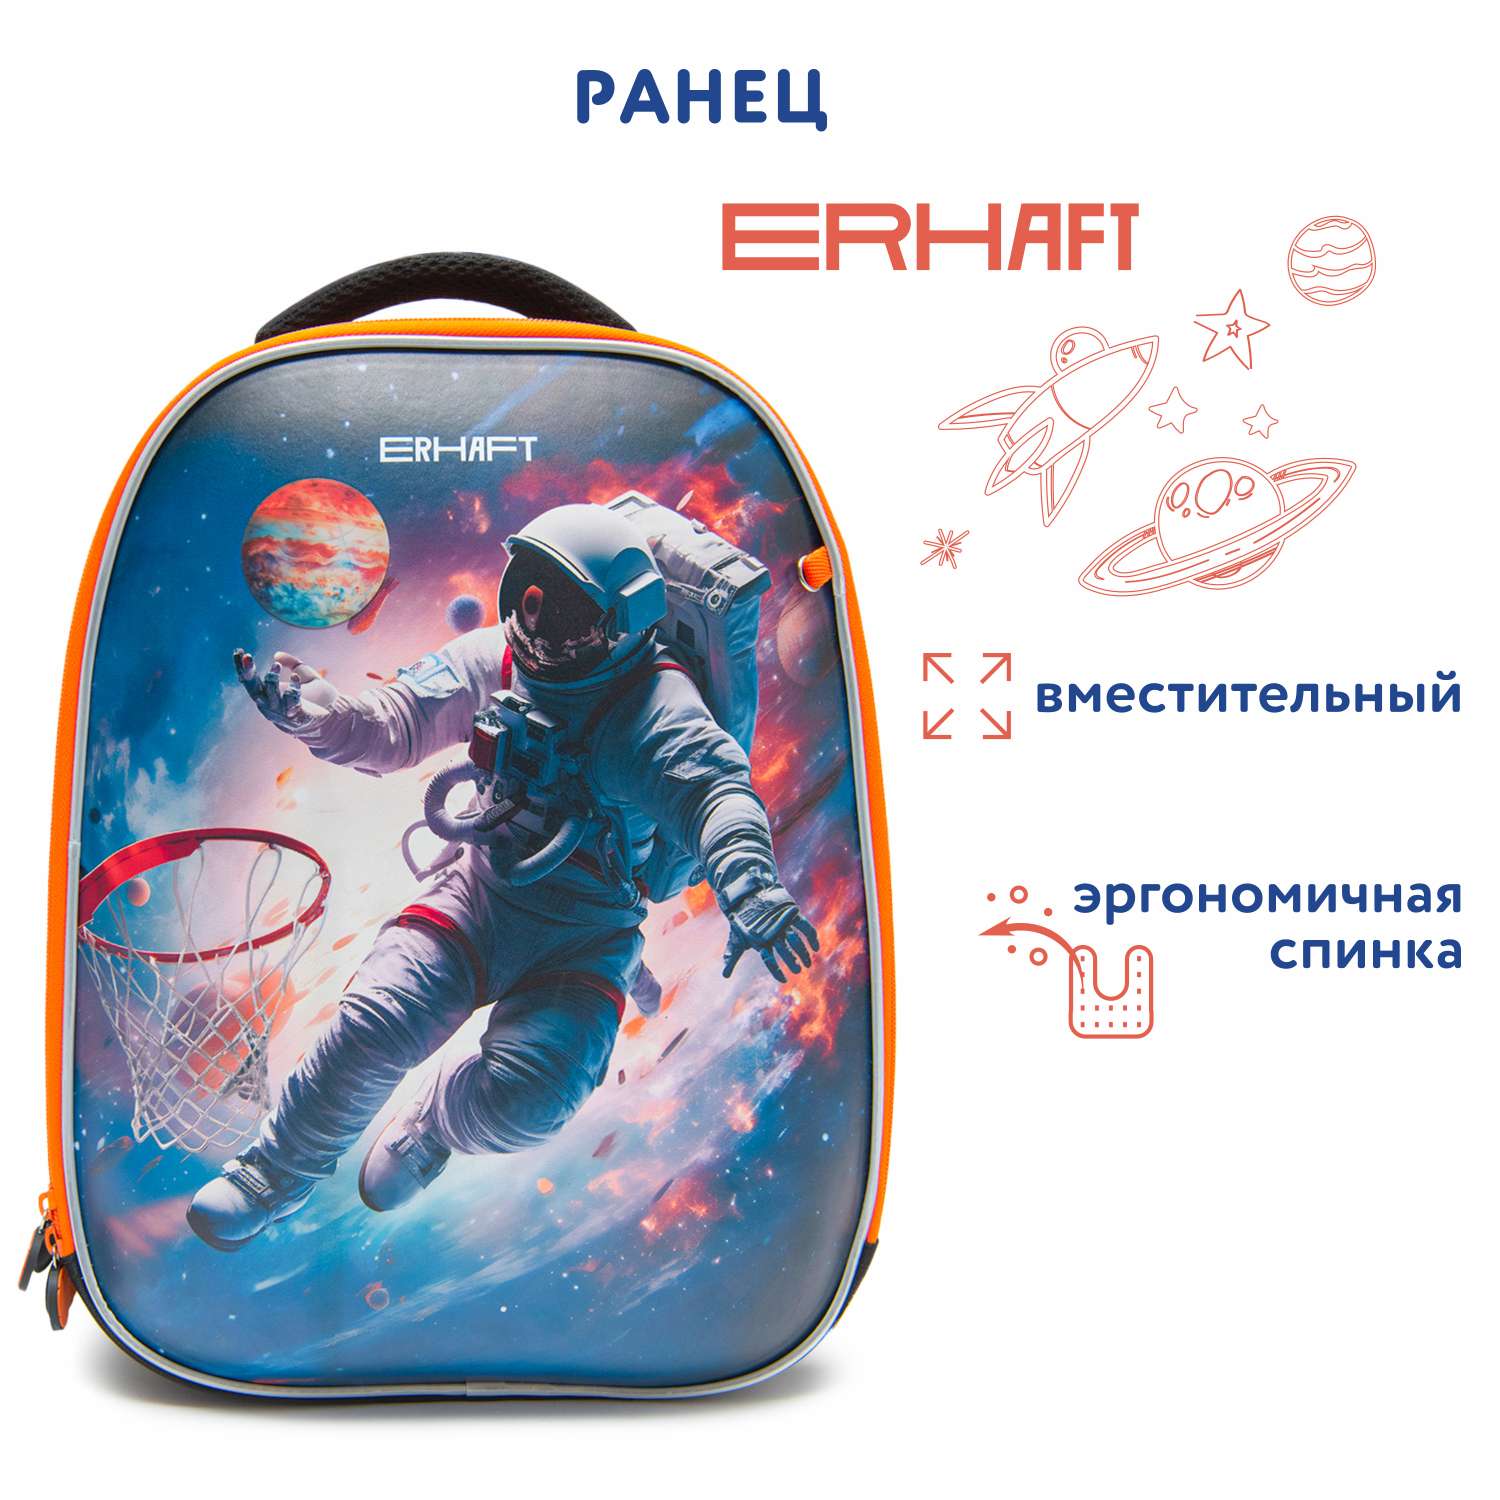 Ранец Erhaft Космонавт 24K021 - фото 1